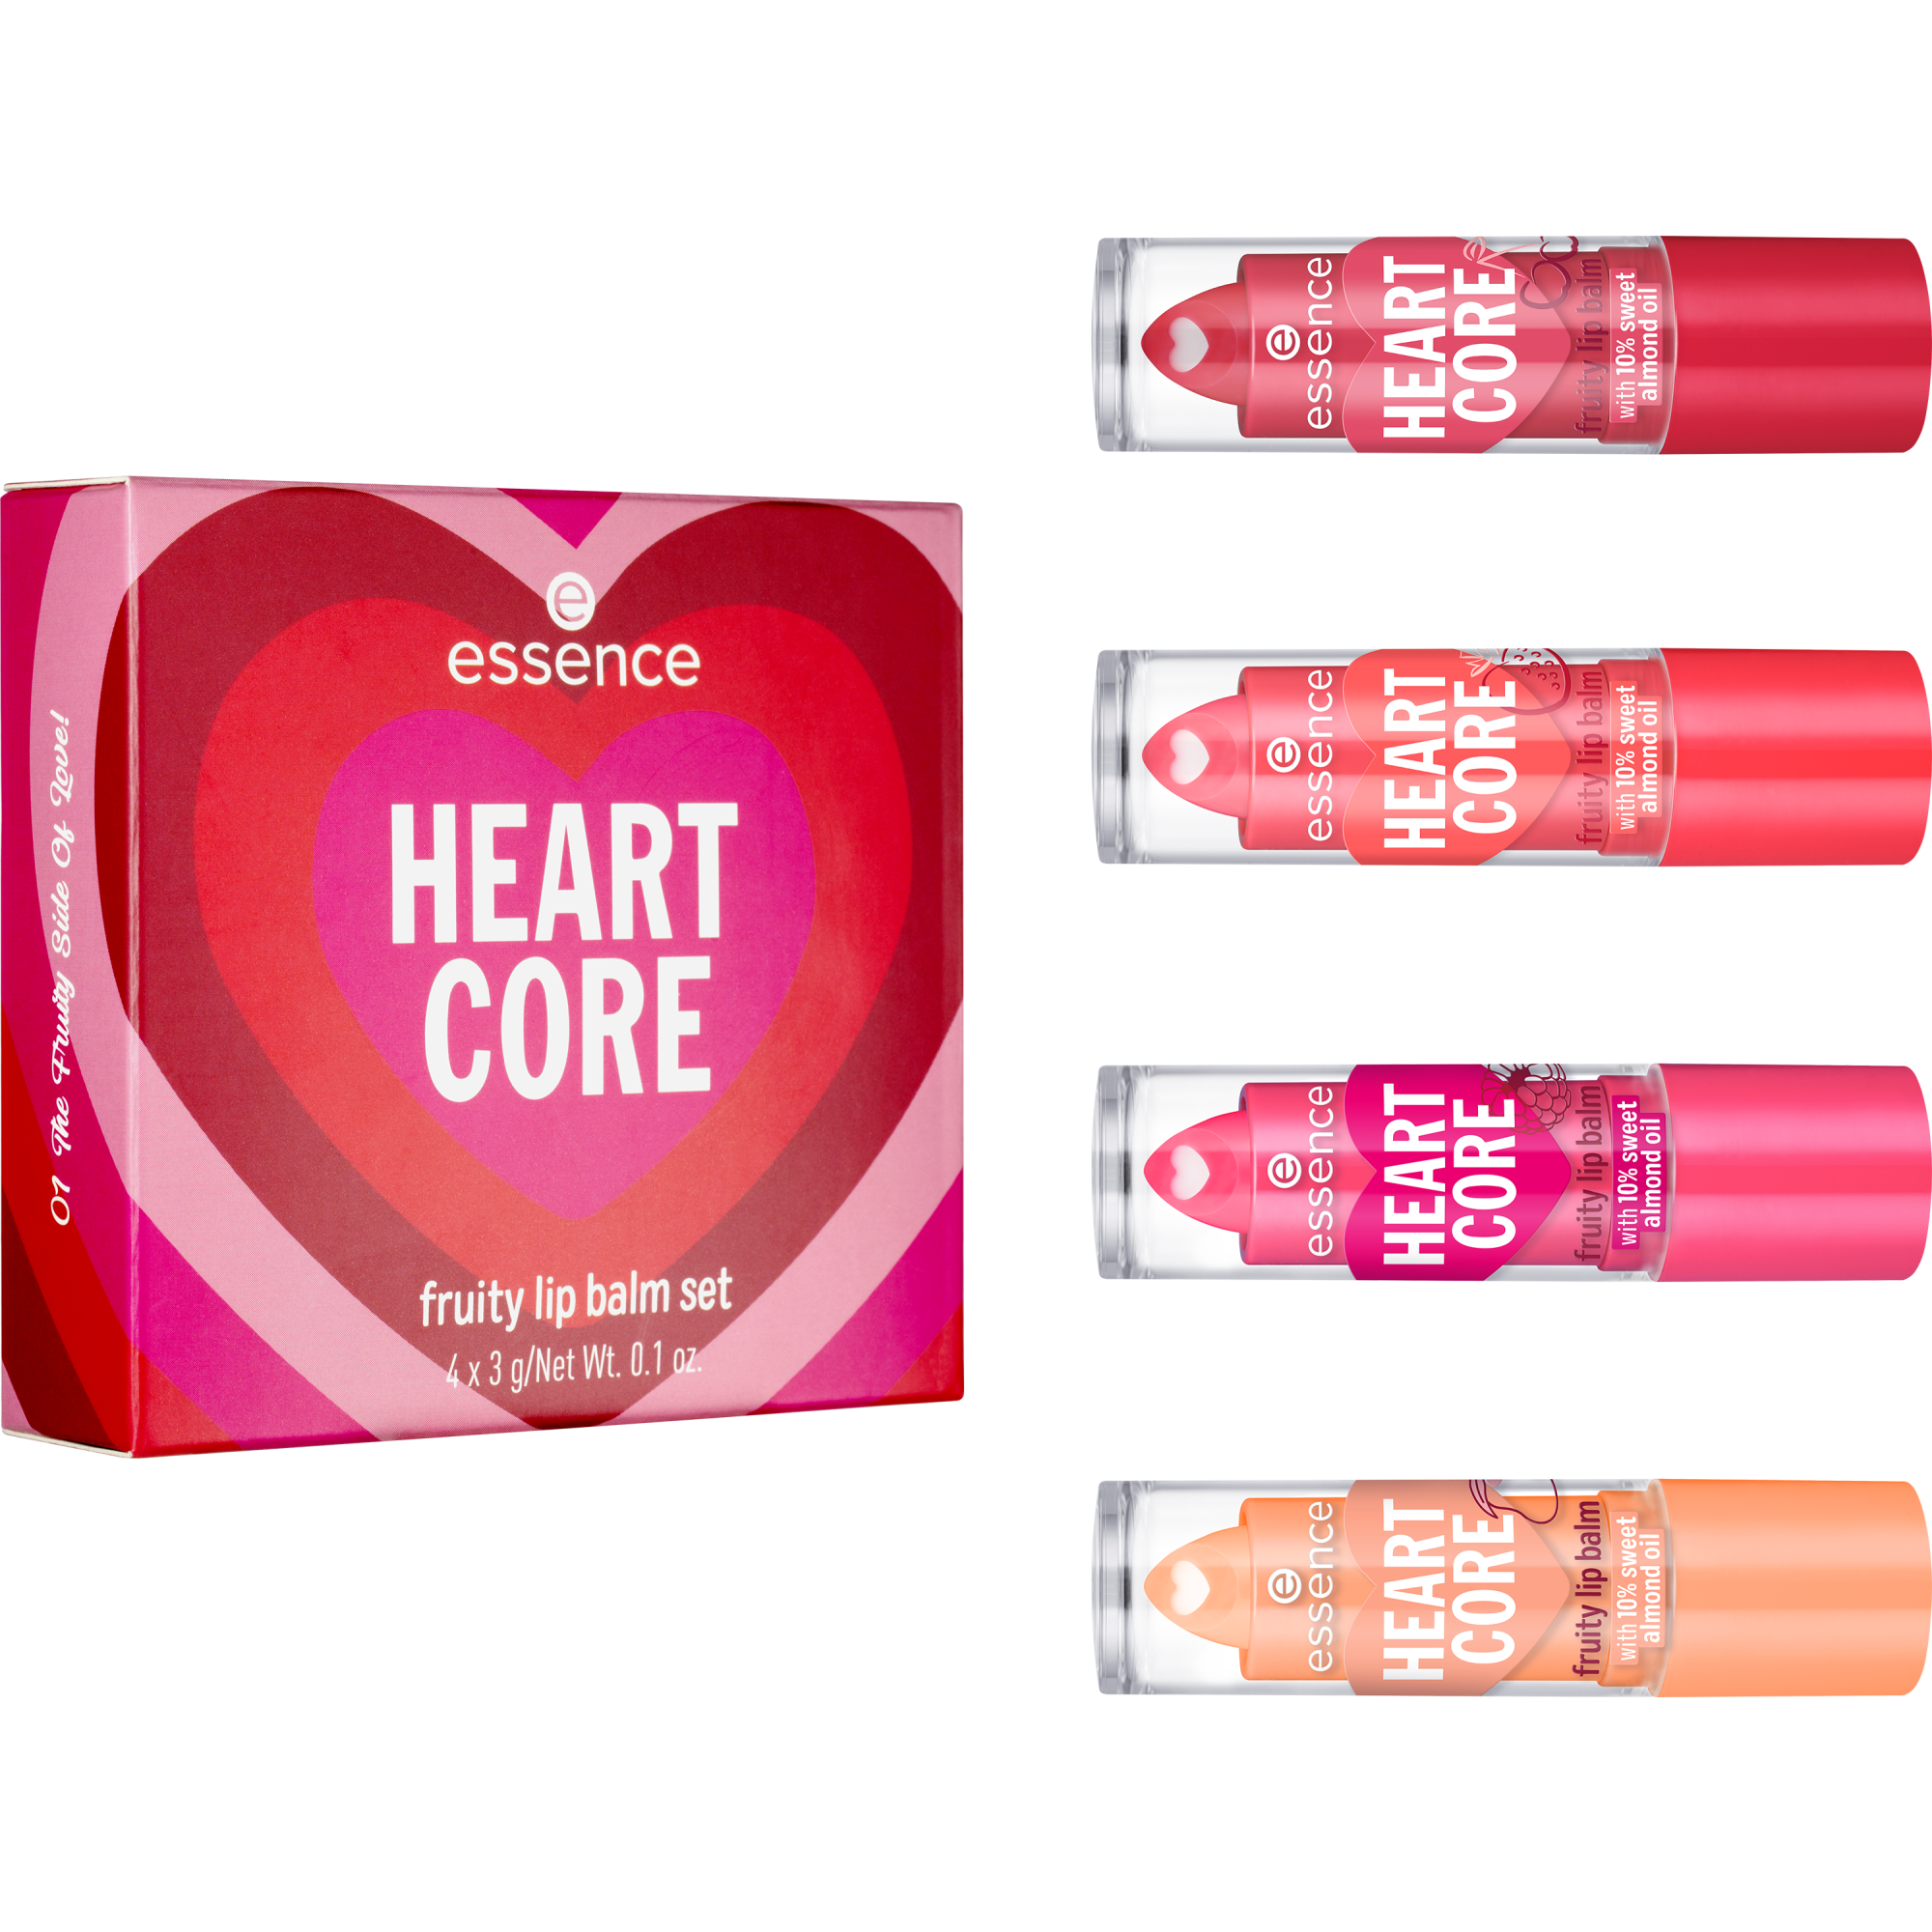 HEART CORE fruity lip balm set kit baume à lèvres